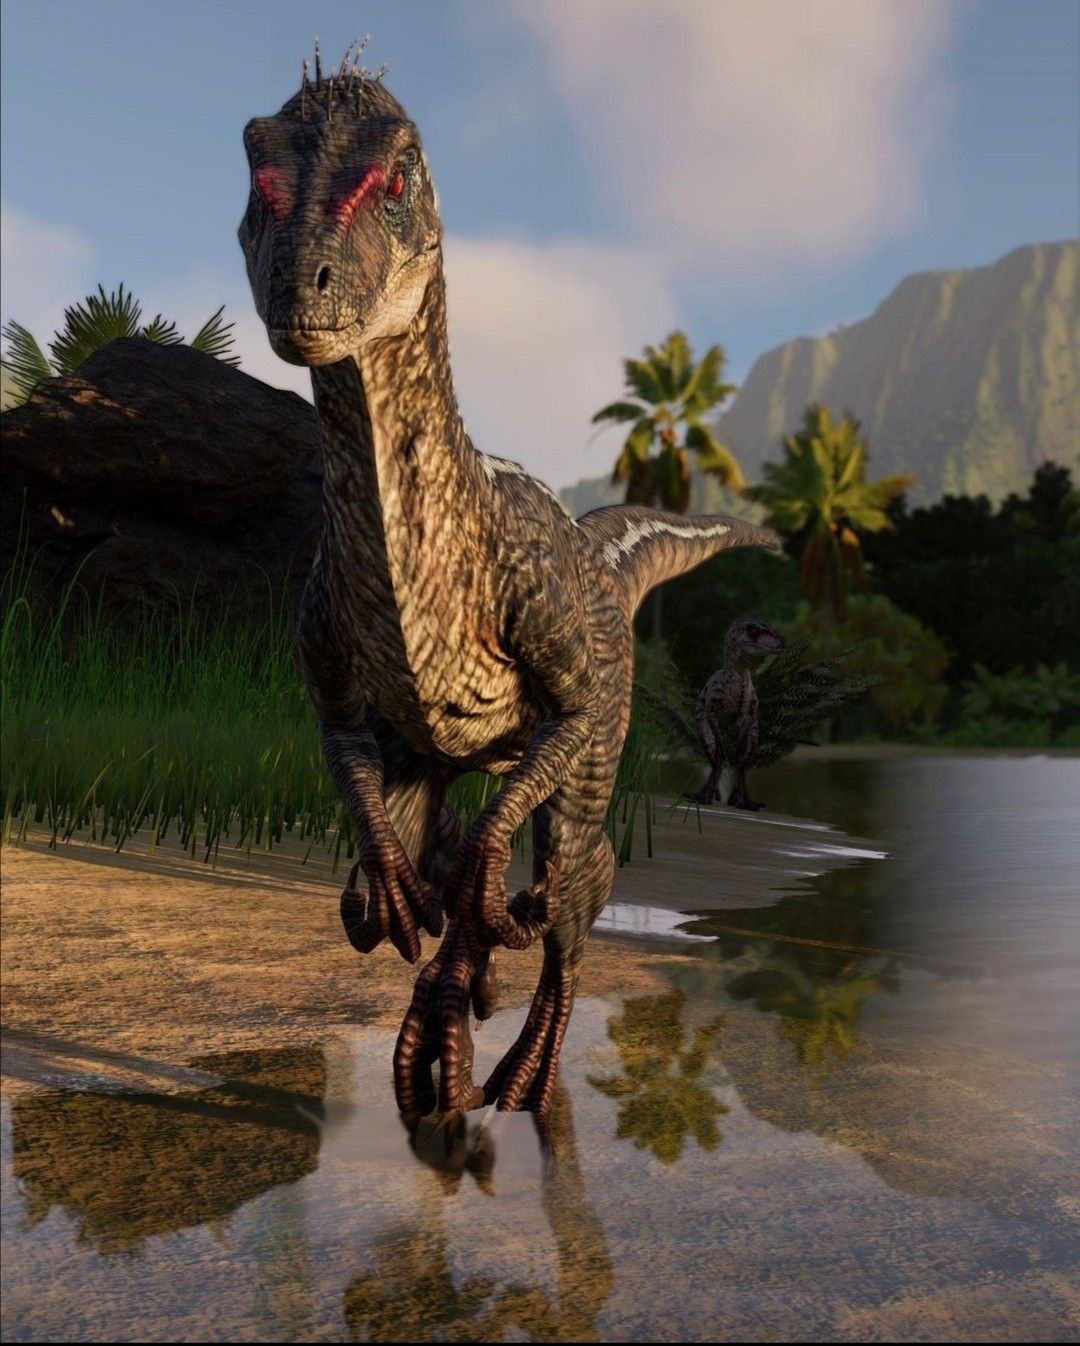 Velociraptor from the film Jurassic Park.